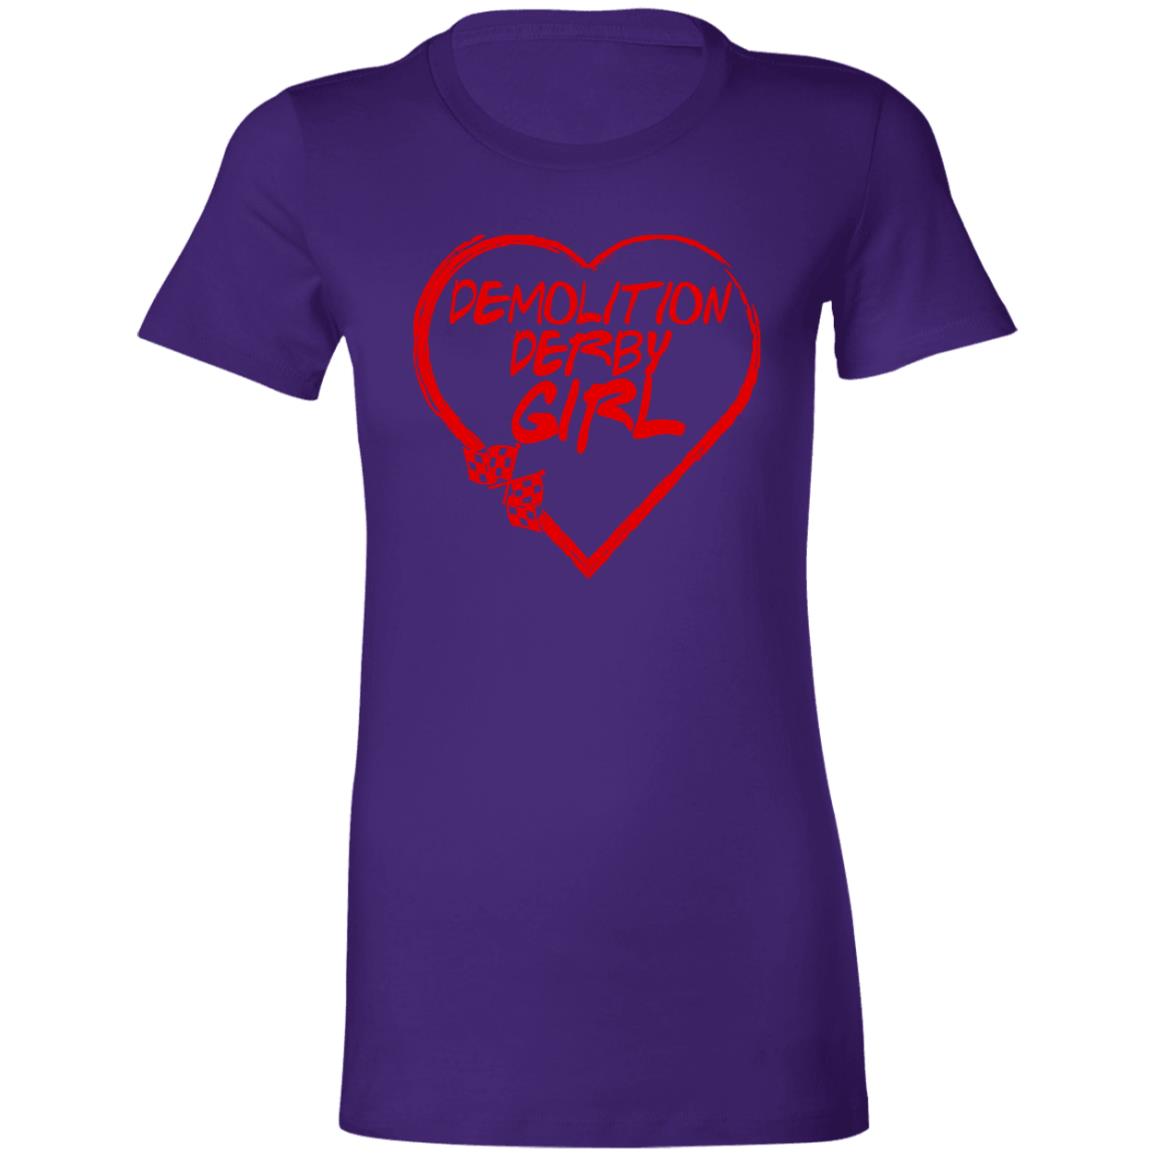 Demolition Derby Girl Heart Ladies' Favorite T-Shirt